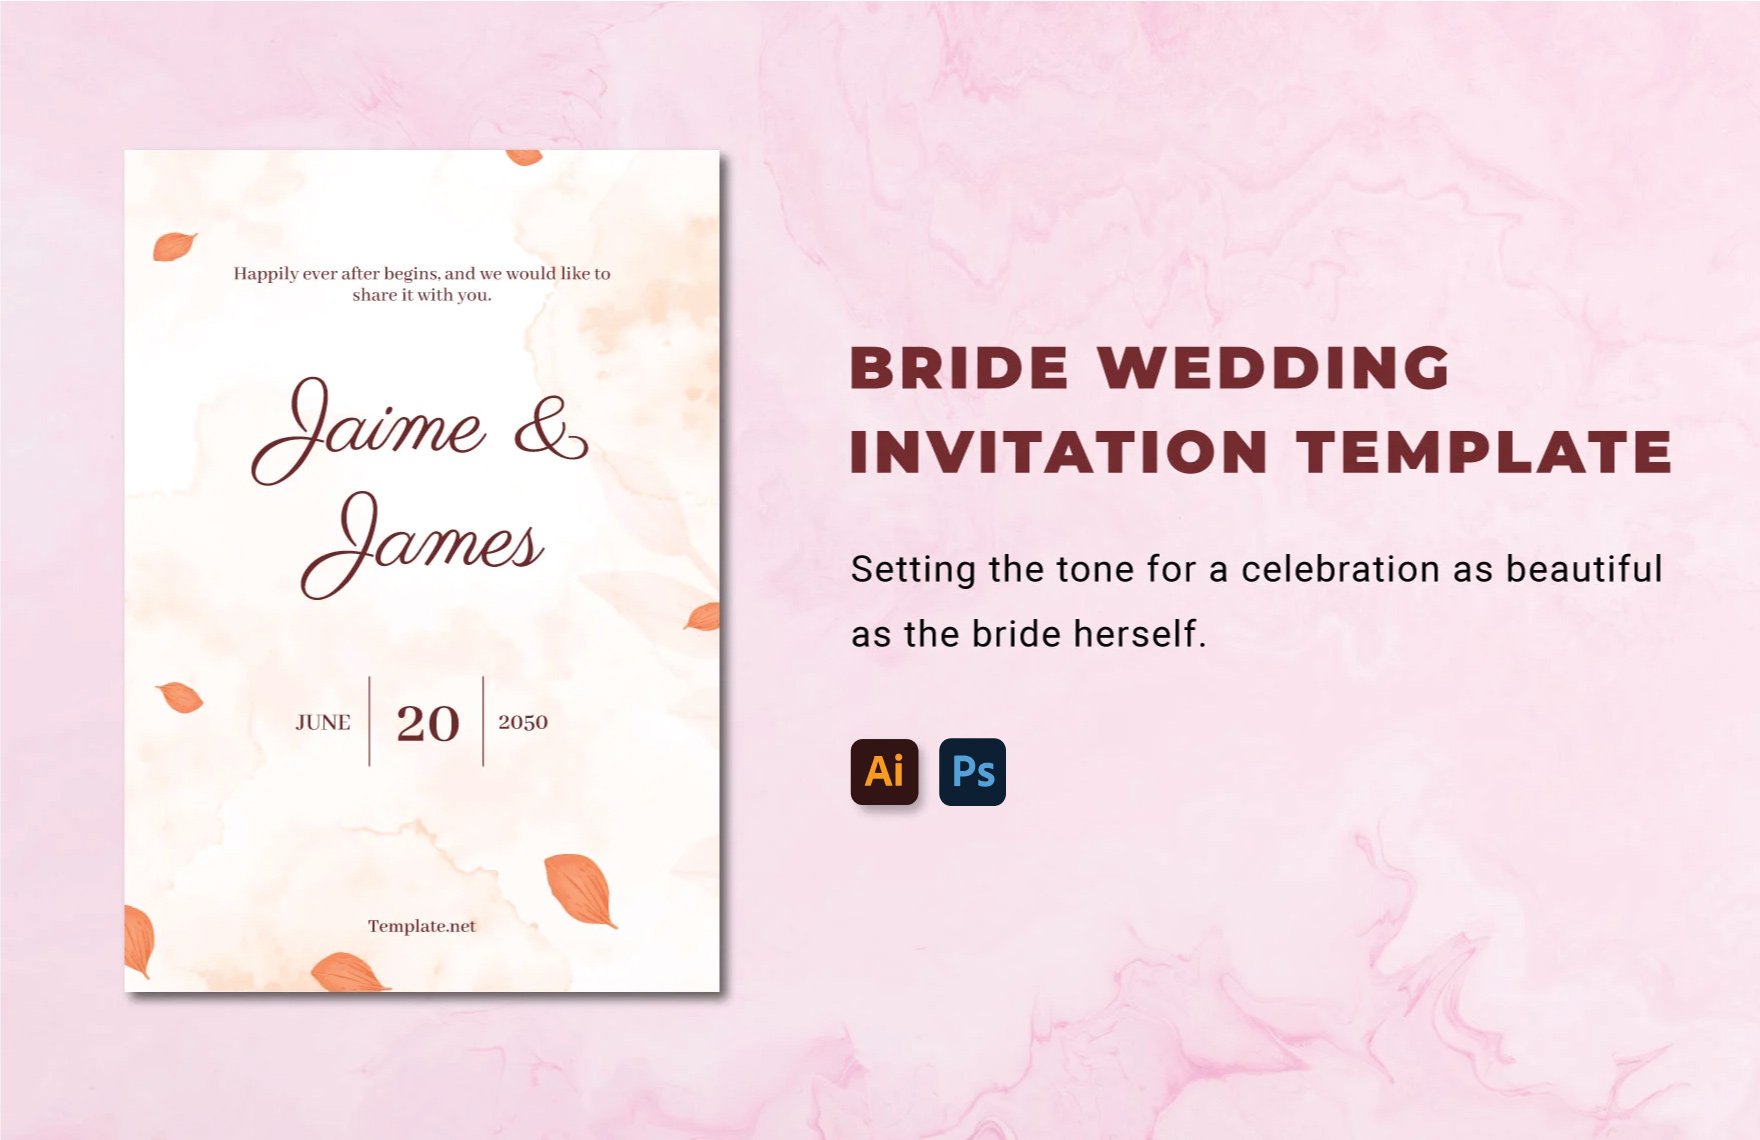 Bride Wedding Invitation